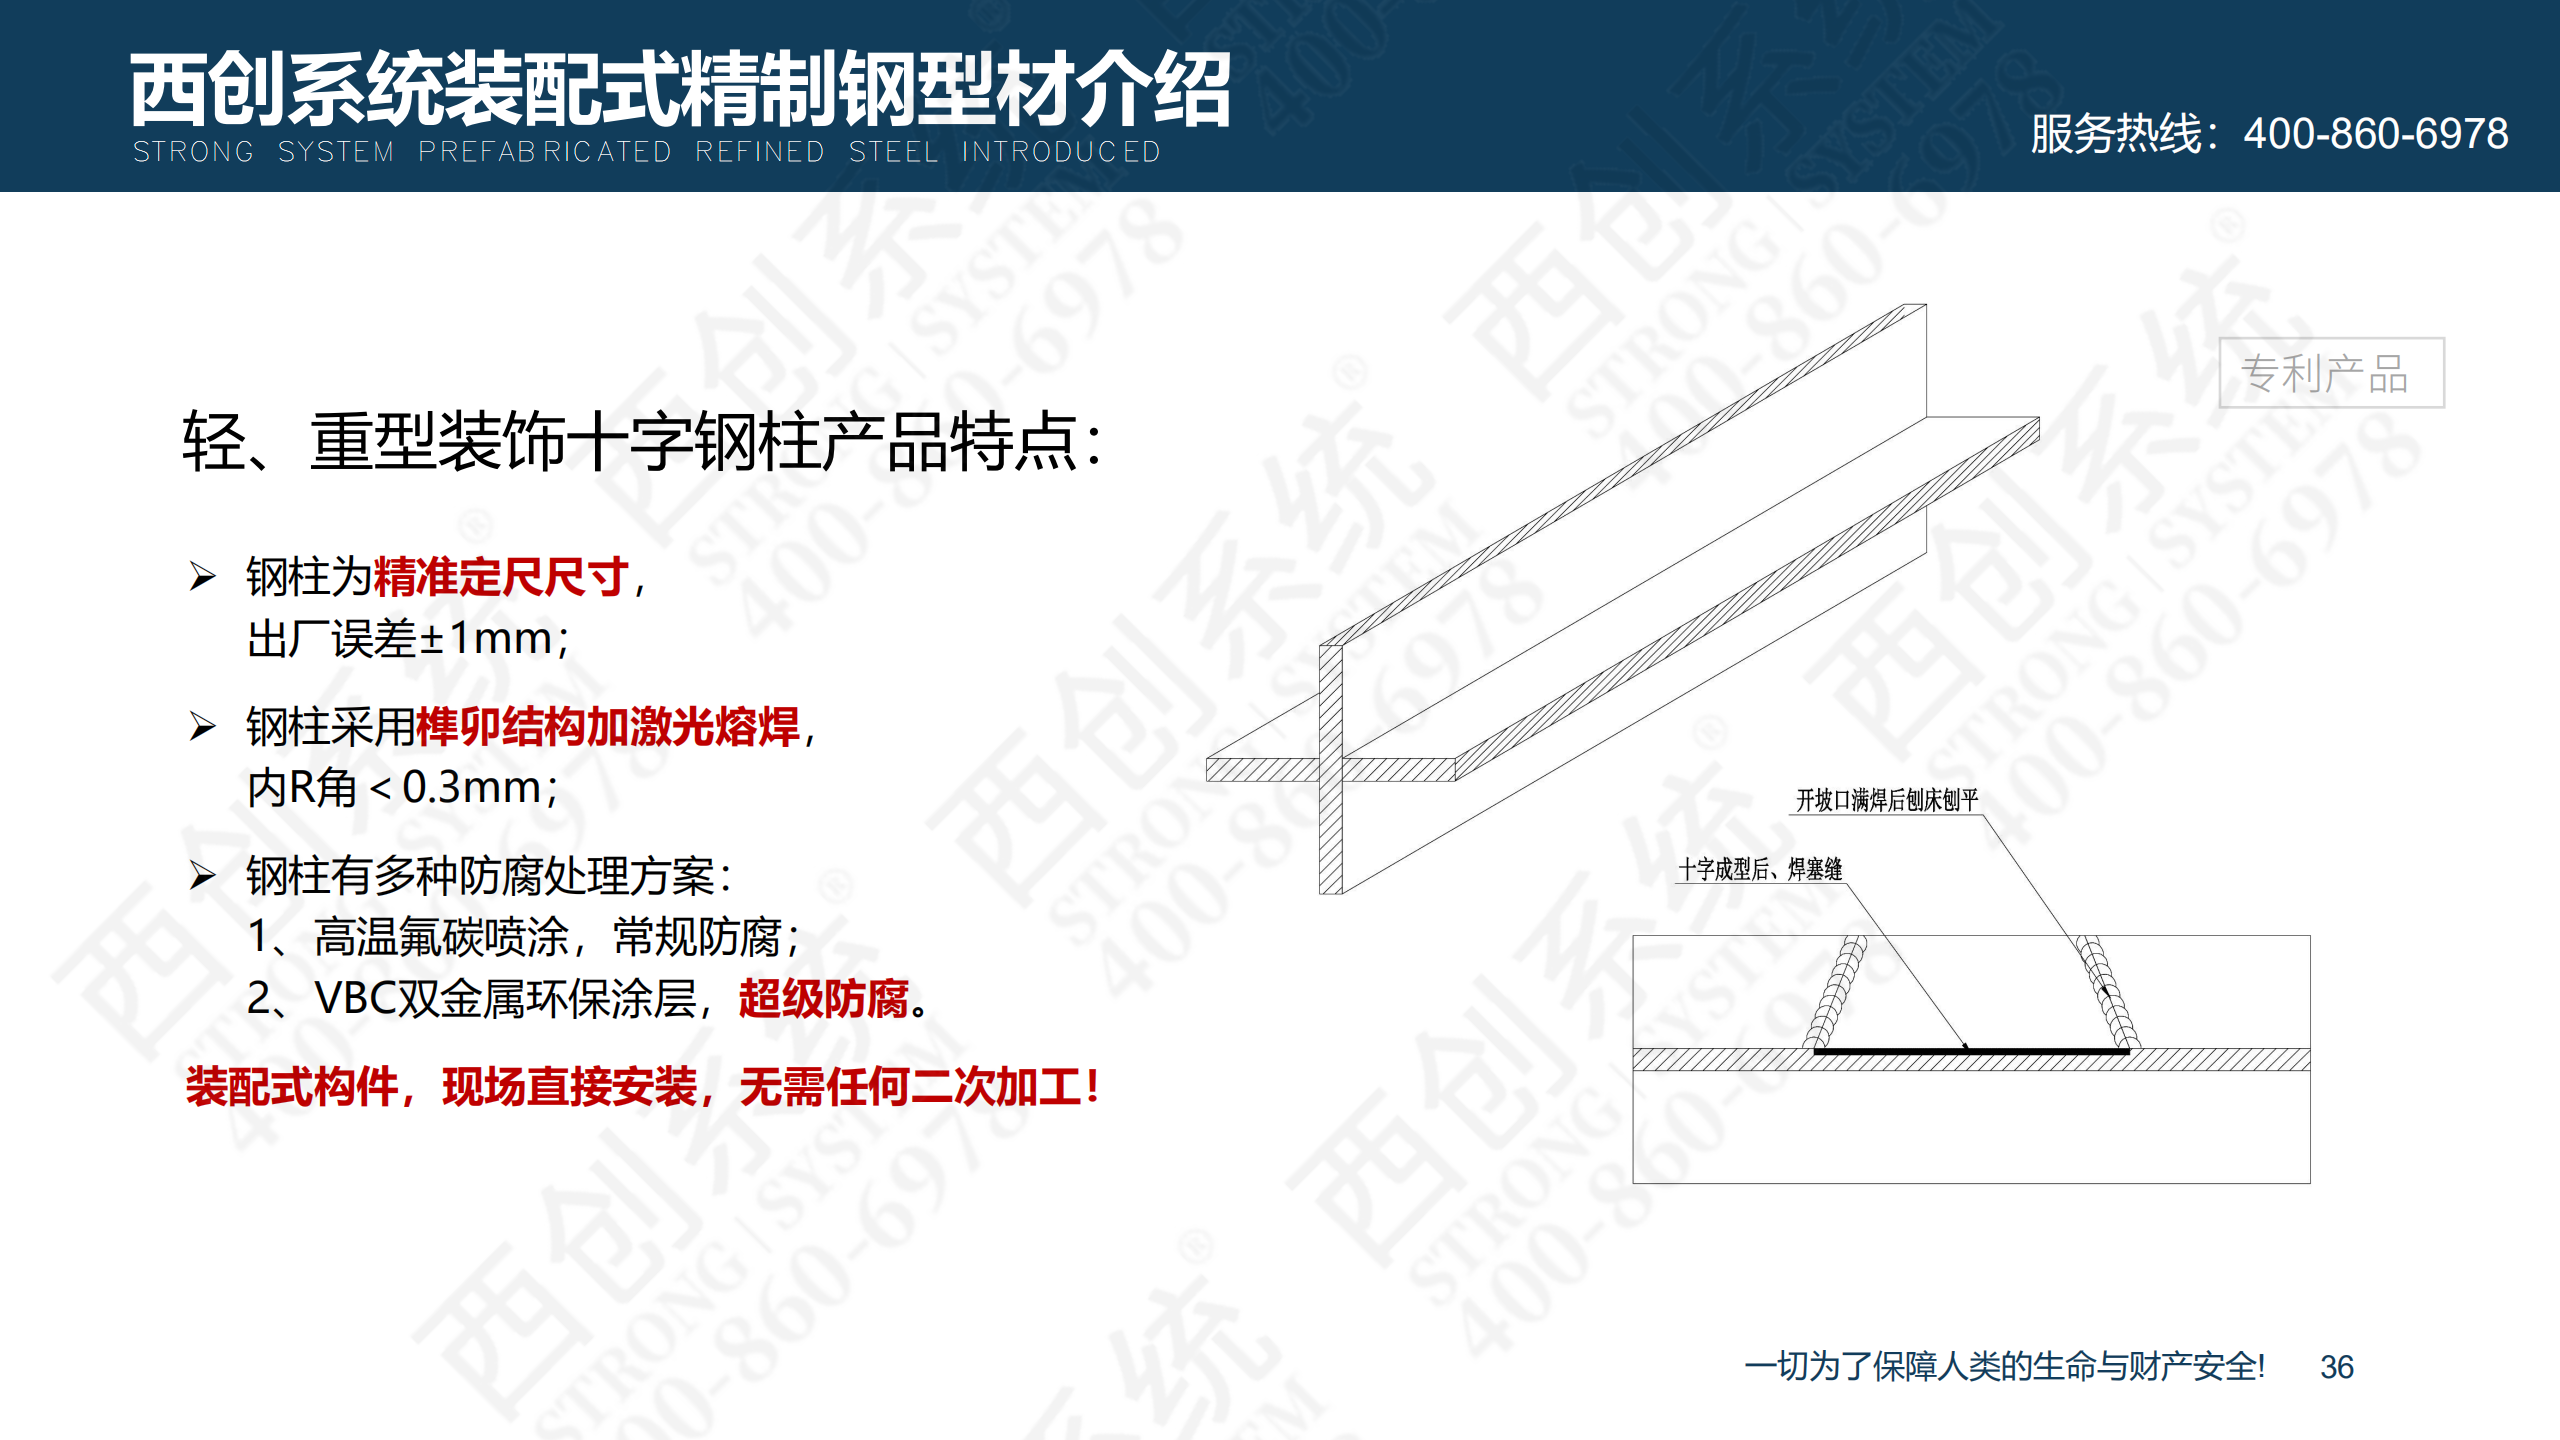 装配式精制钢型材的特点及性能优势(图37)